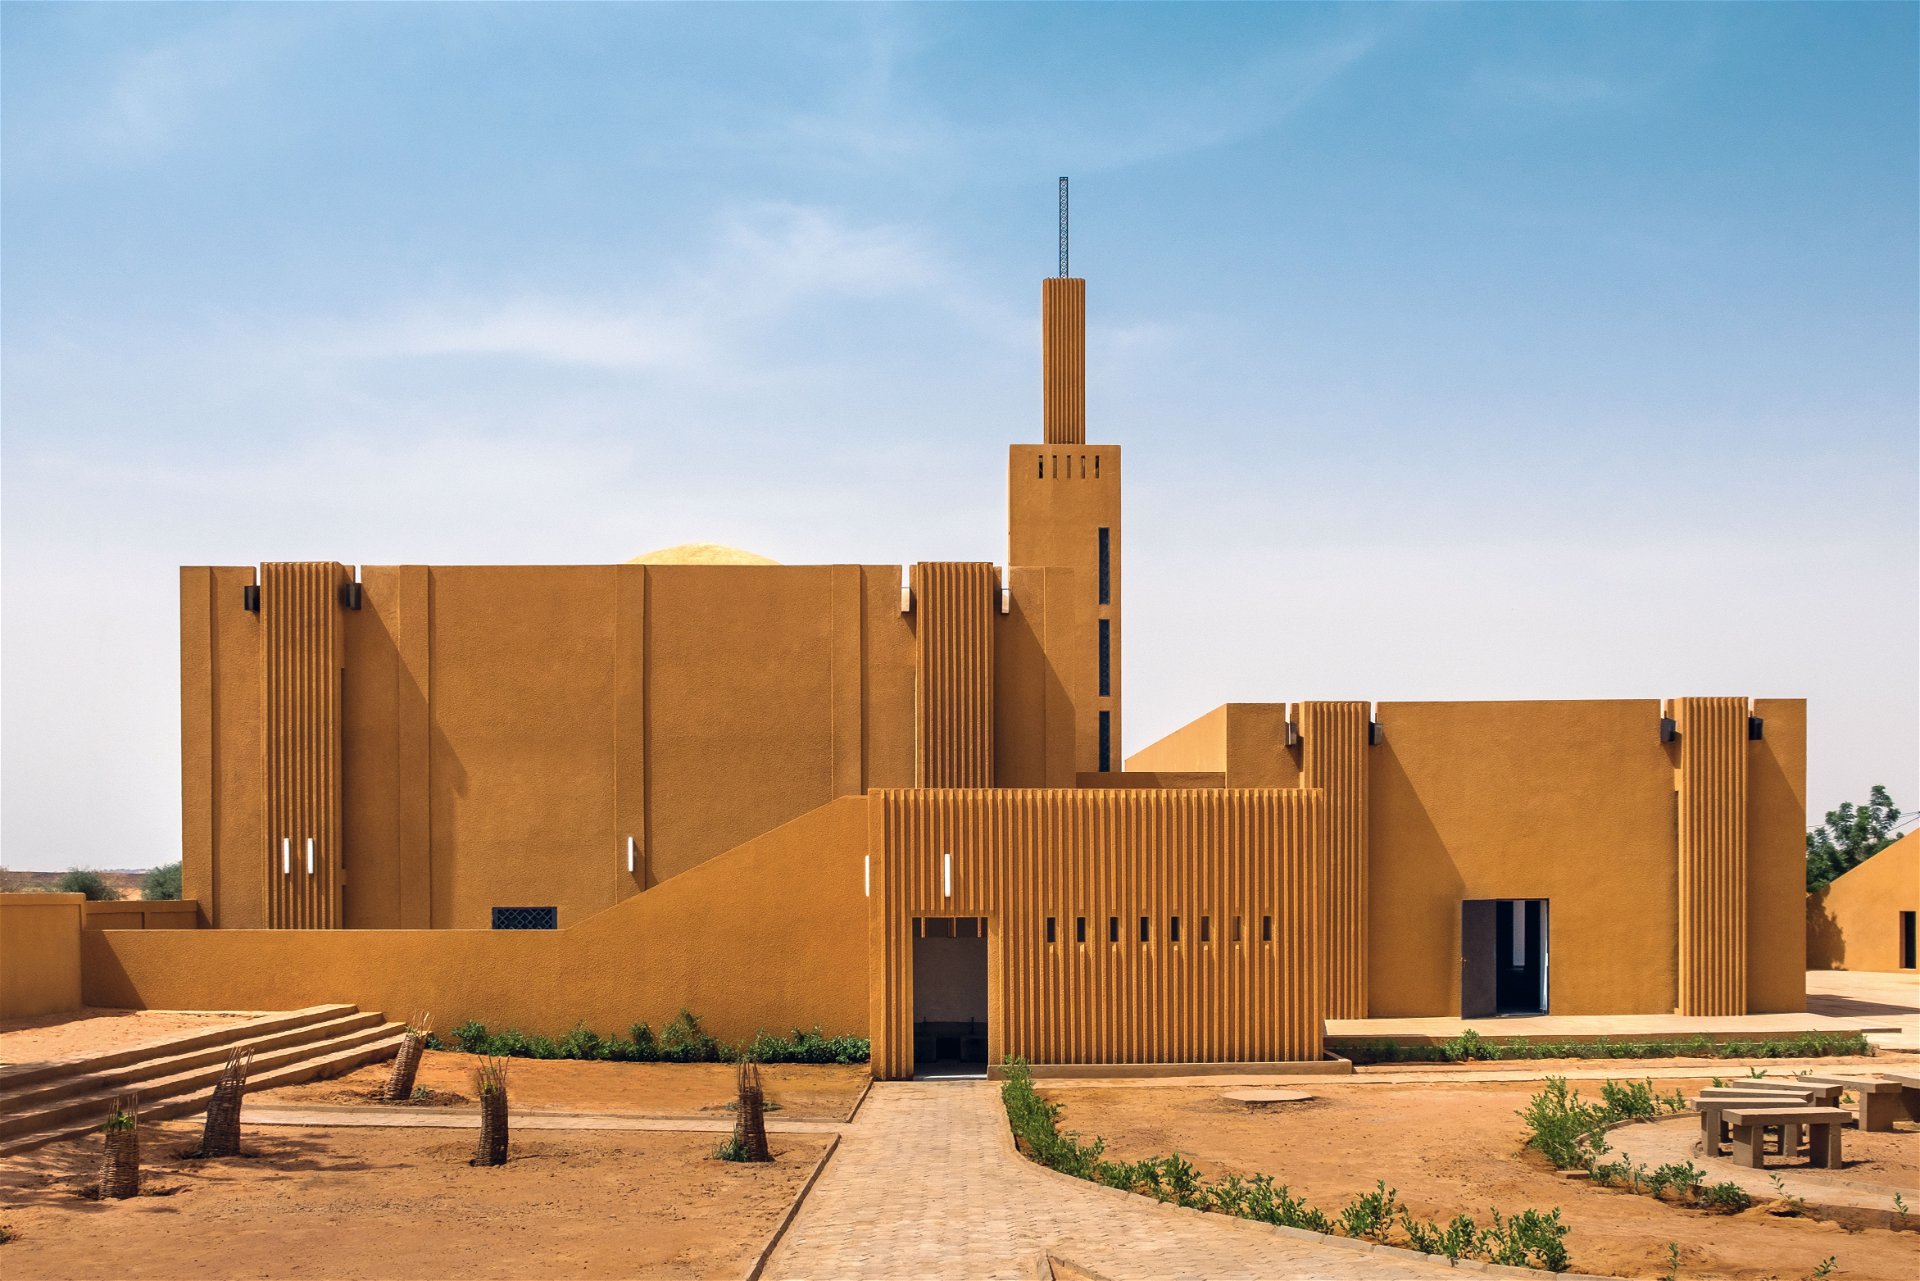 Architektur aus Afrika: Mariam Kamara stammt aus Niger. Sie sucht innovative Wege, um lokale Materialien zu verwenden, wie beim Hikma-Komplex in Dandaji. 